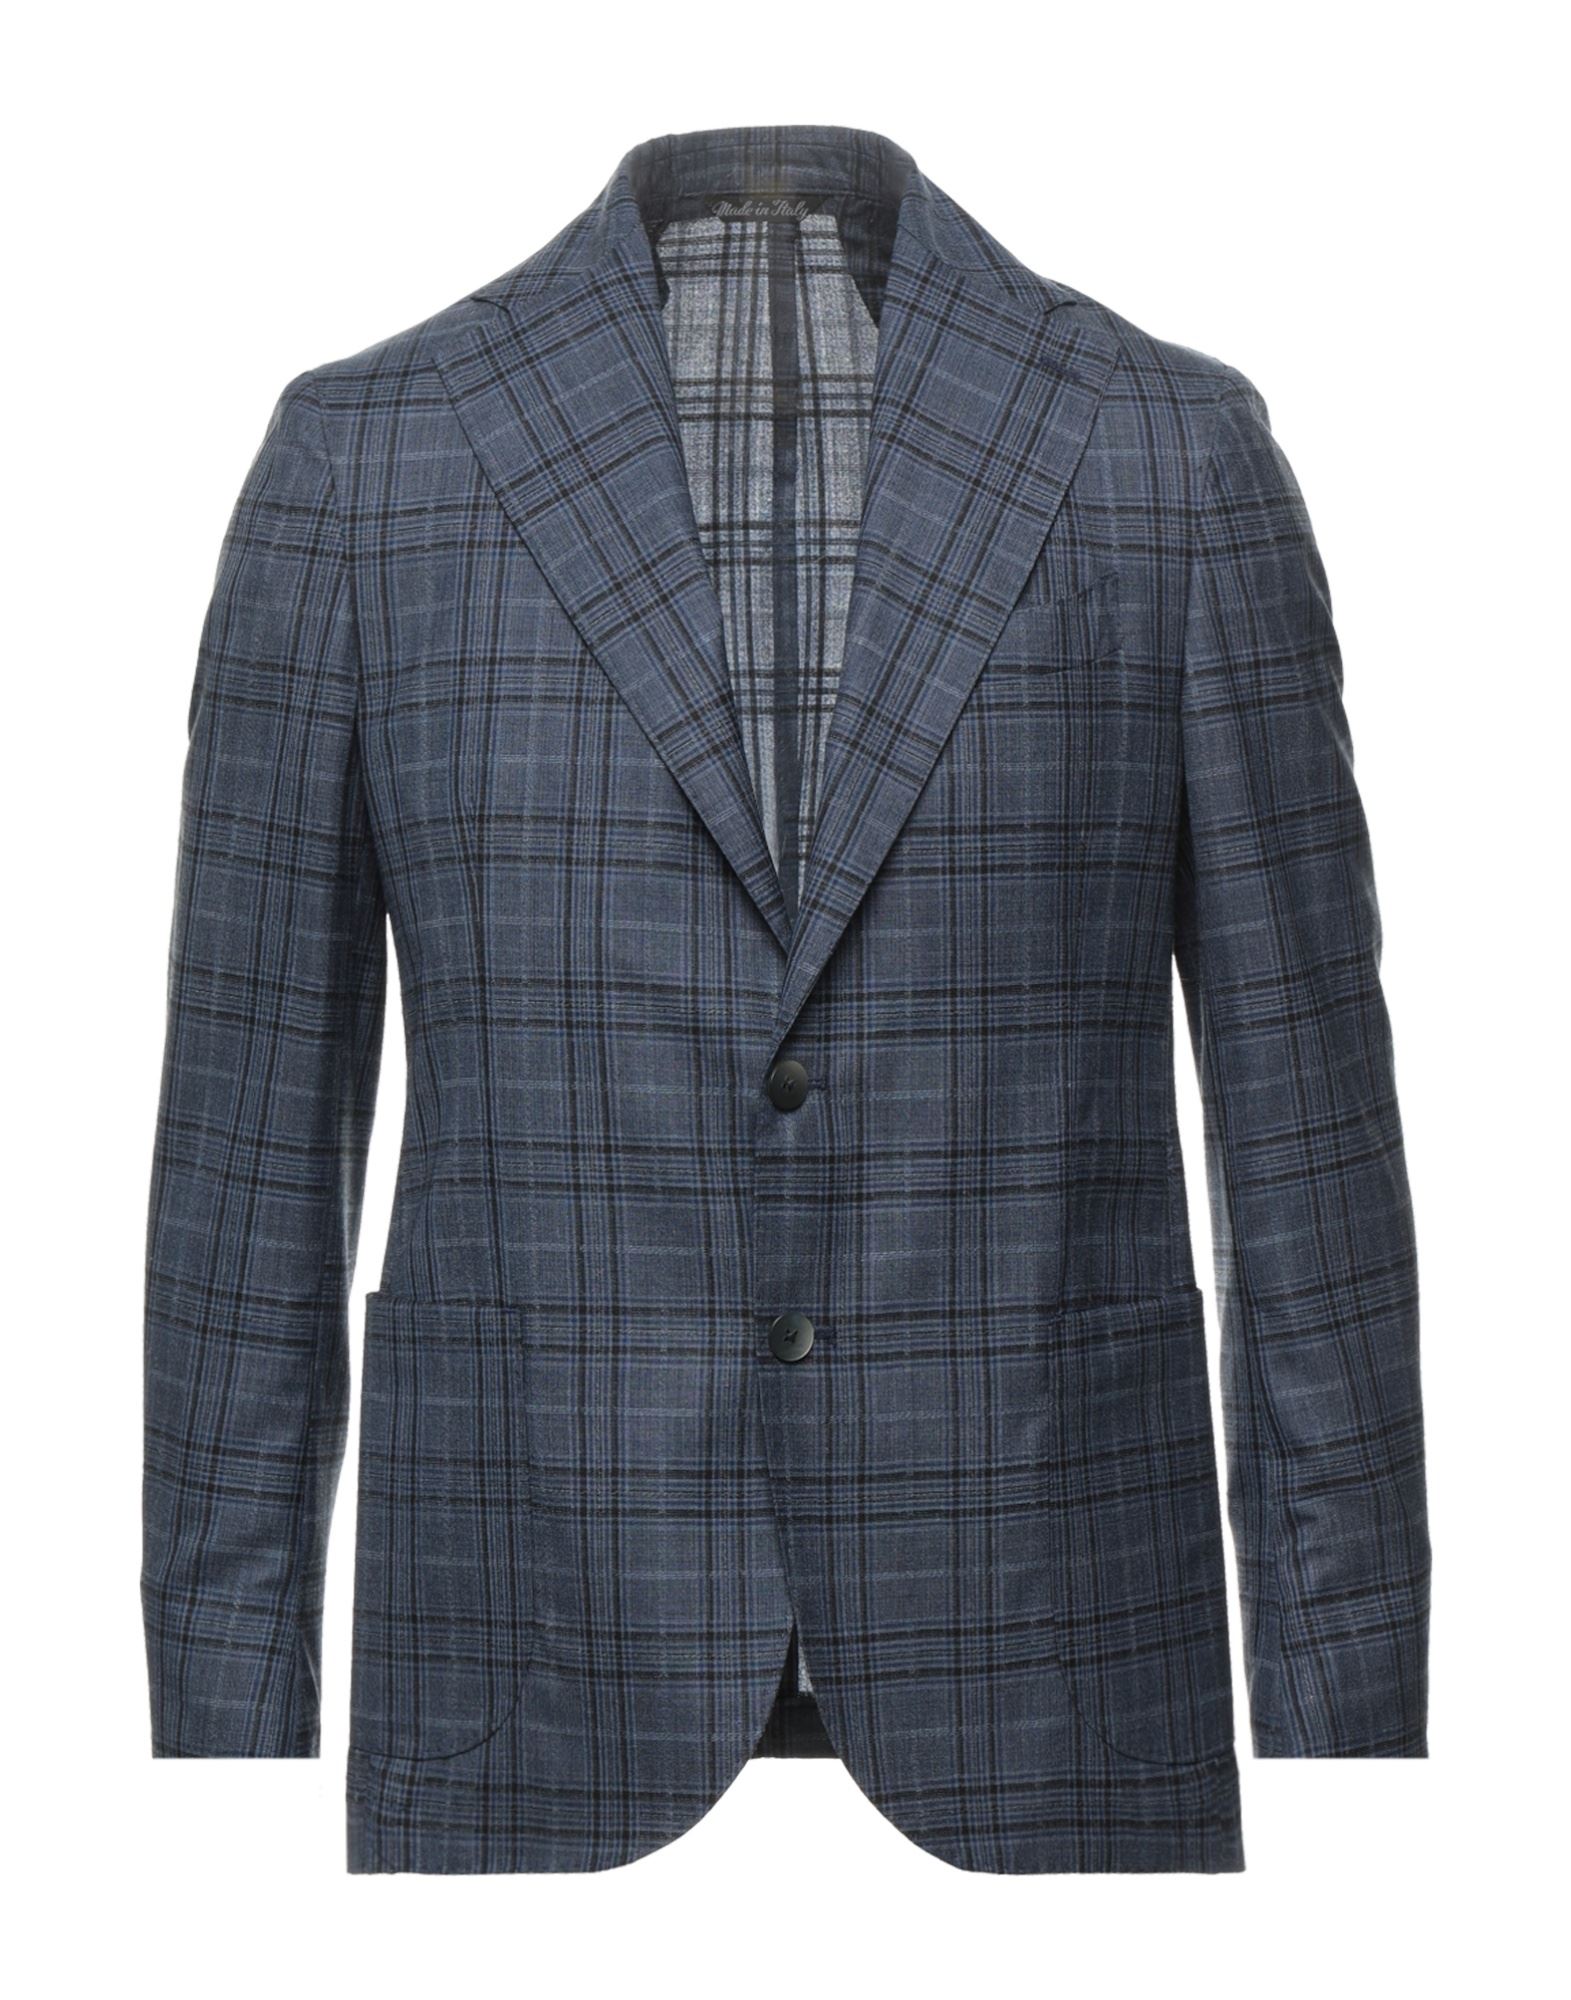 GAETANO AIELLO Suit jackets